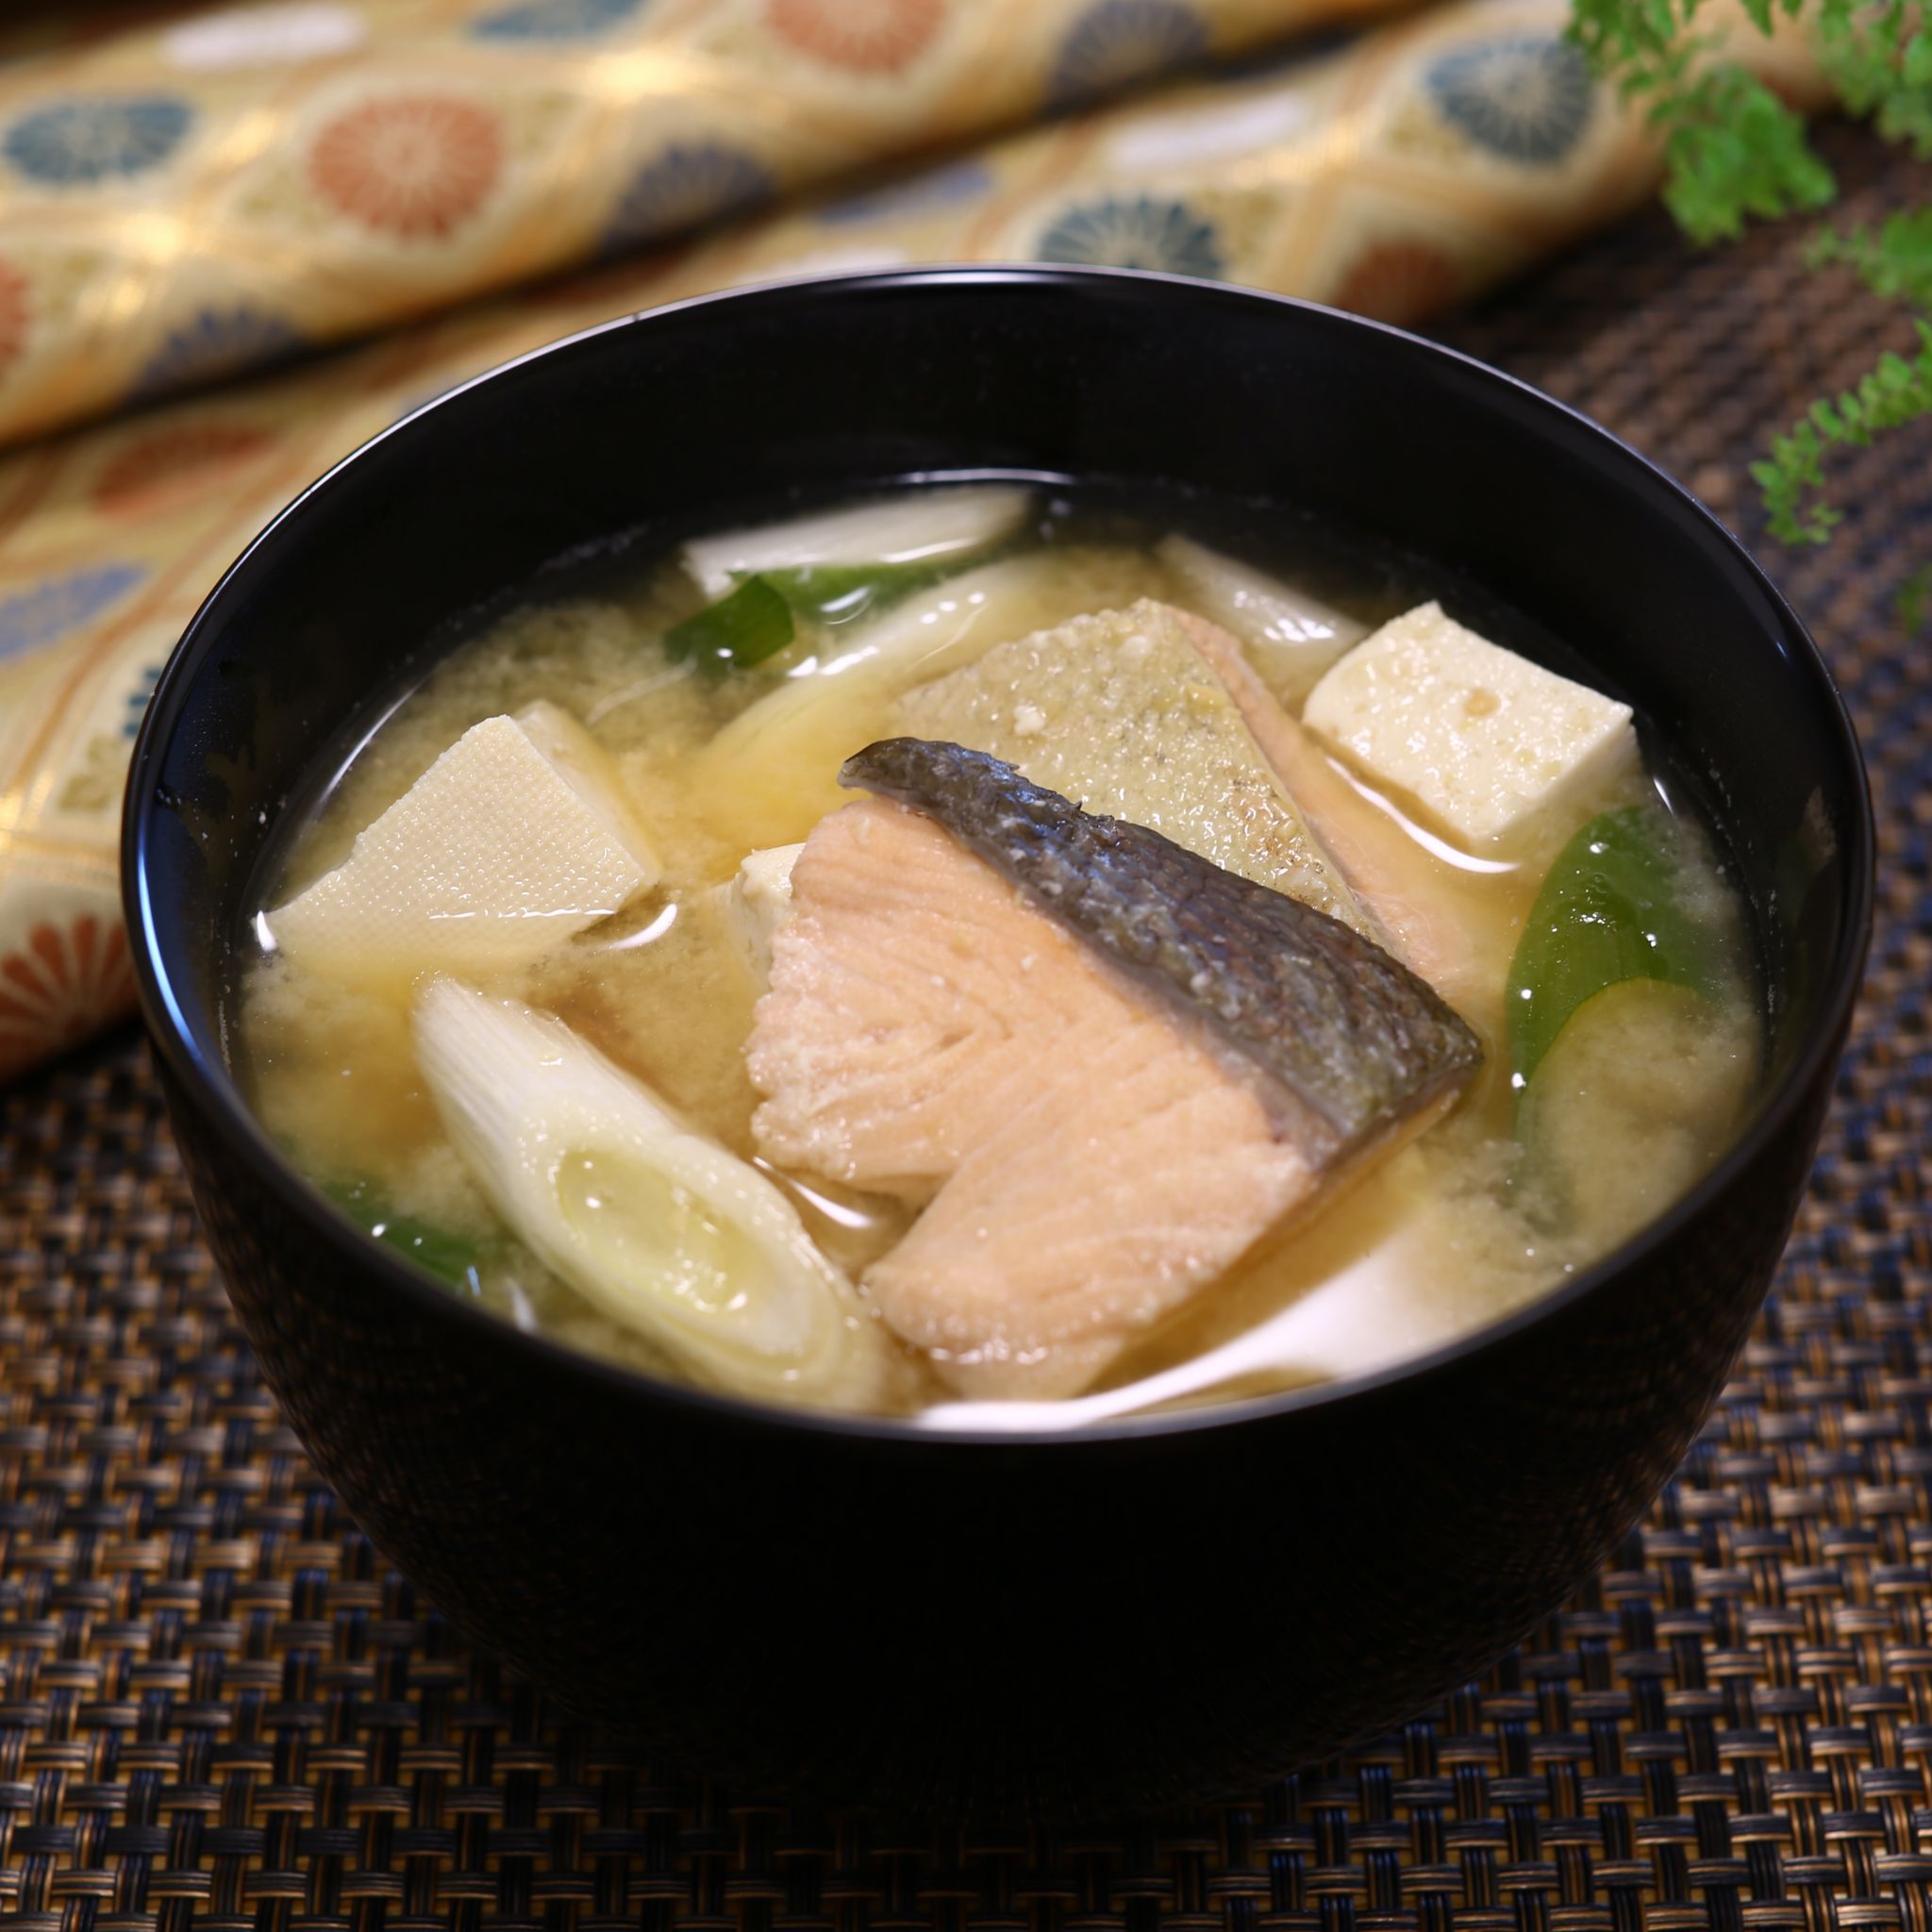 鮭のあら汁のレシピ 上田勝彦さんのおすすめ やまでら くみこ のレシピ